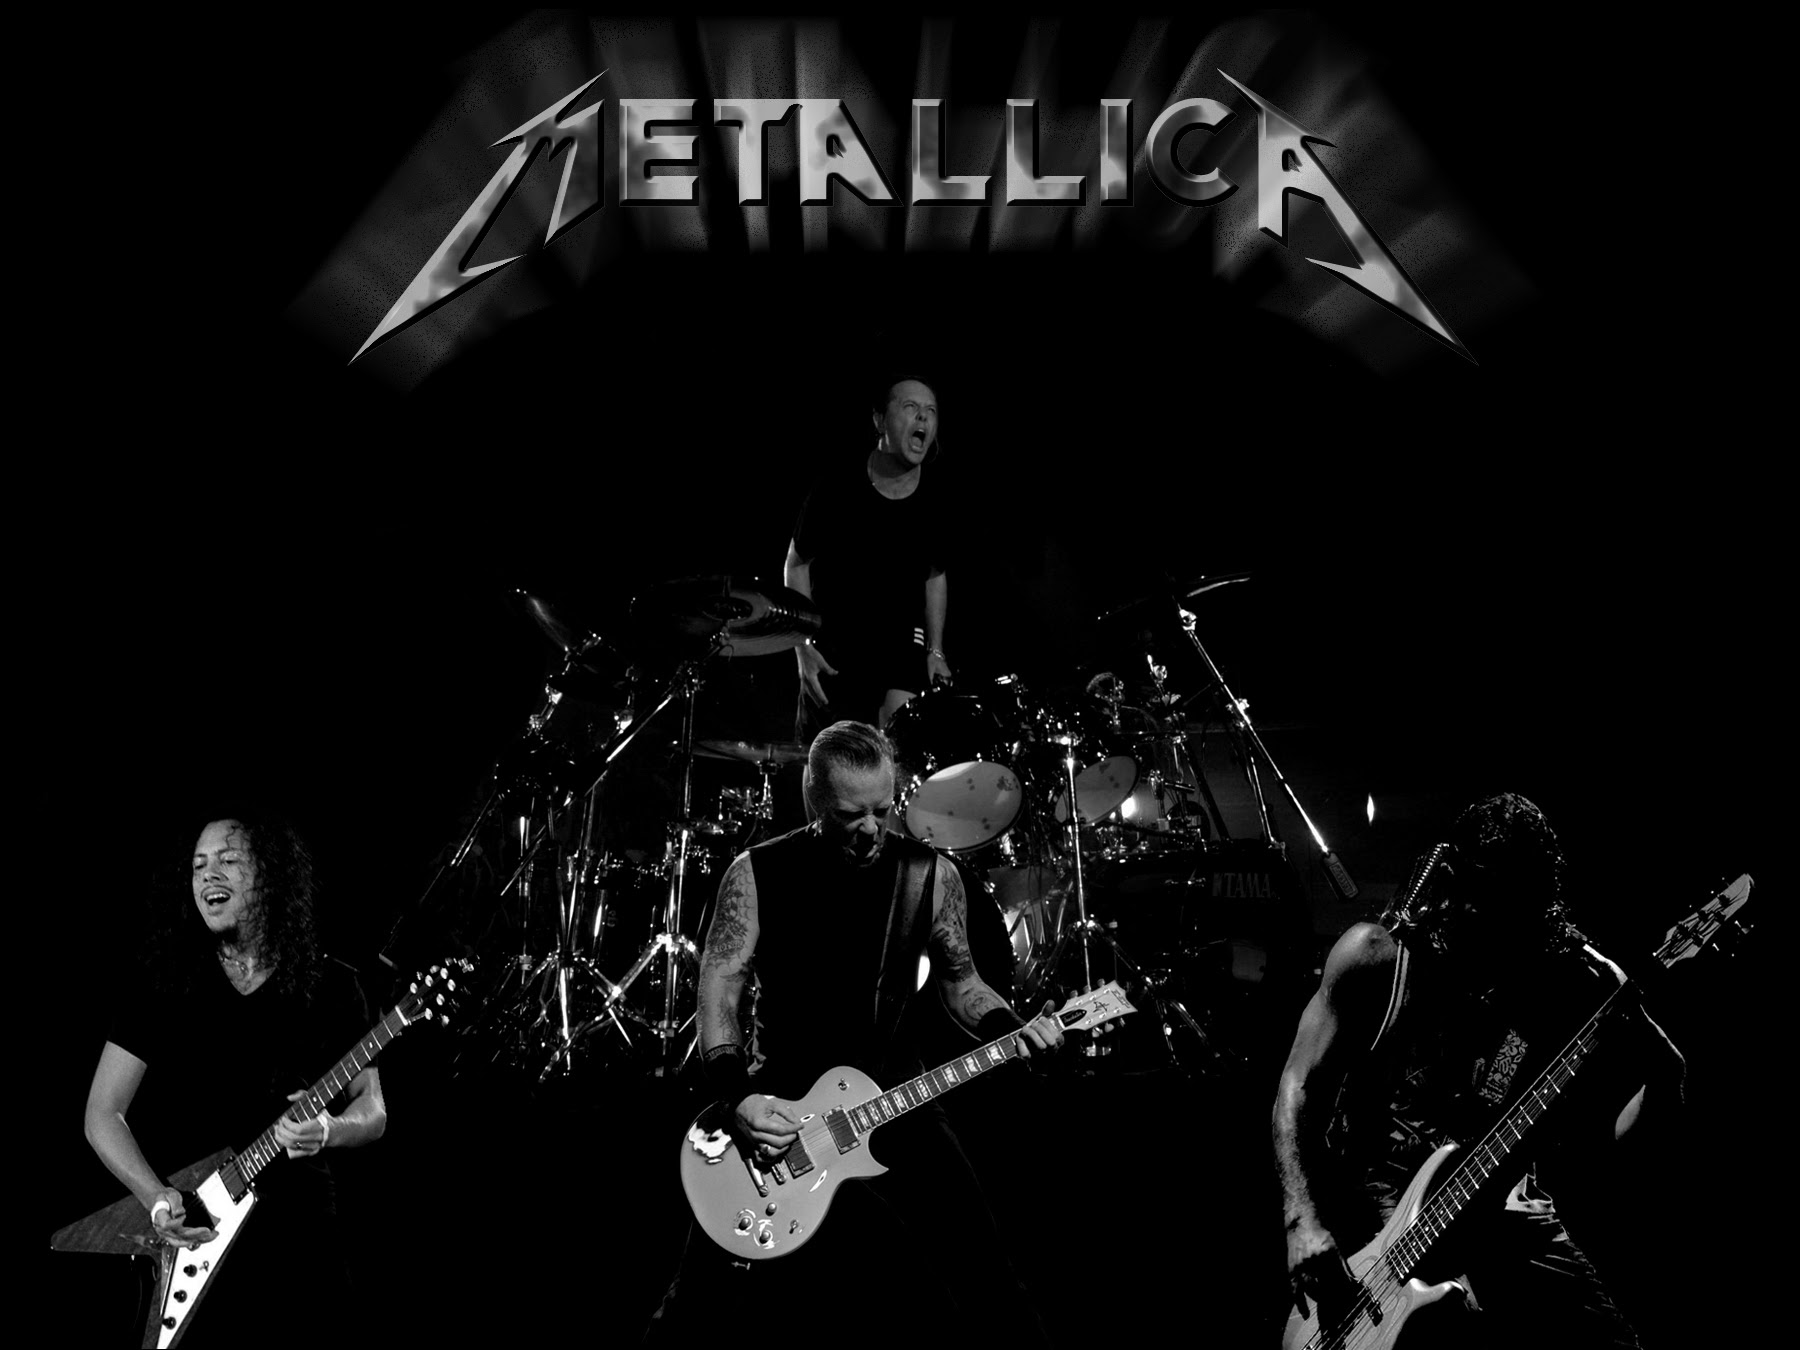 Chanteurs, musique metallica pour votre pc (wallpapers). Metallica Micketo Fond D Ecran 29600231 Fanpop